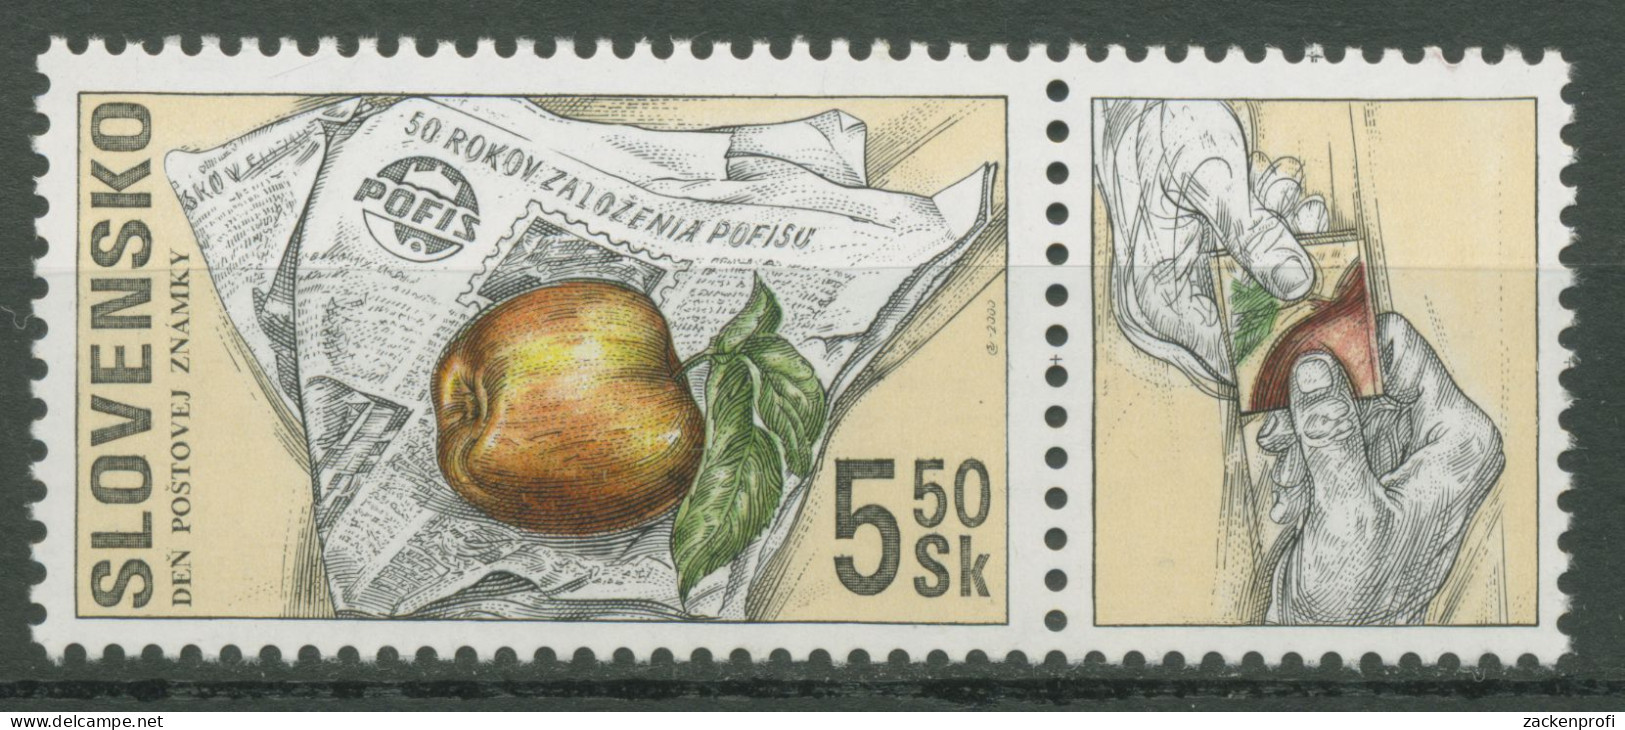 Slowakei 2000 Tag Der Briefmarke POFIS Zeitschrift 383 Zf Postfrisch - Neufs